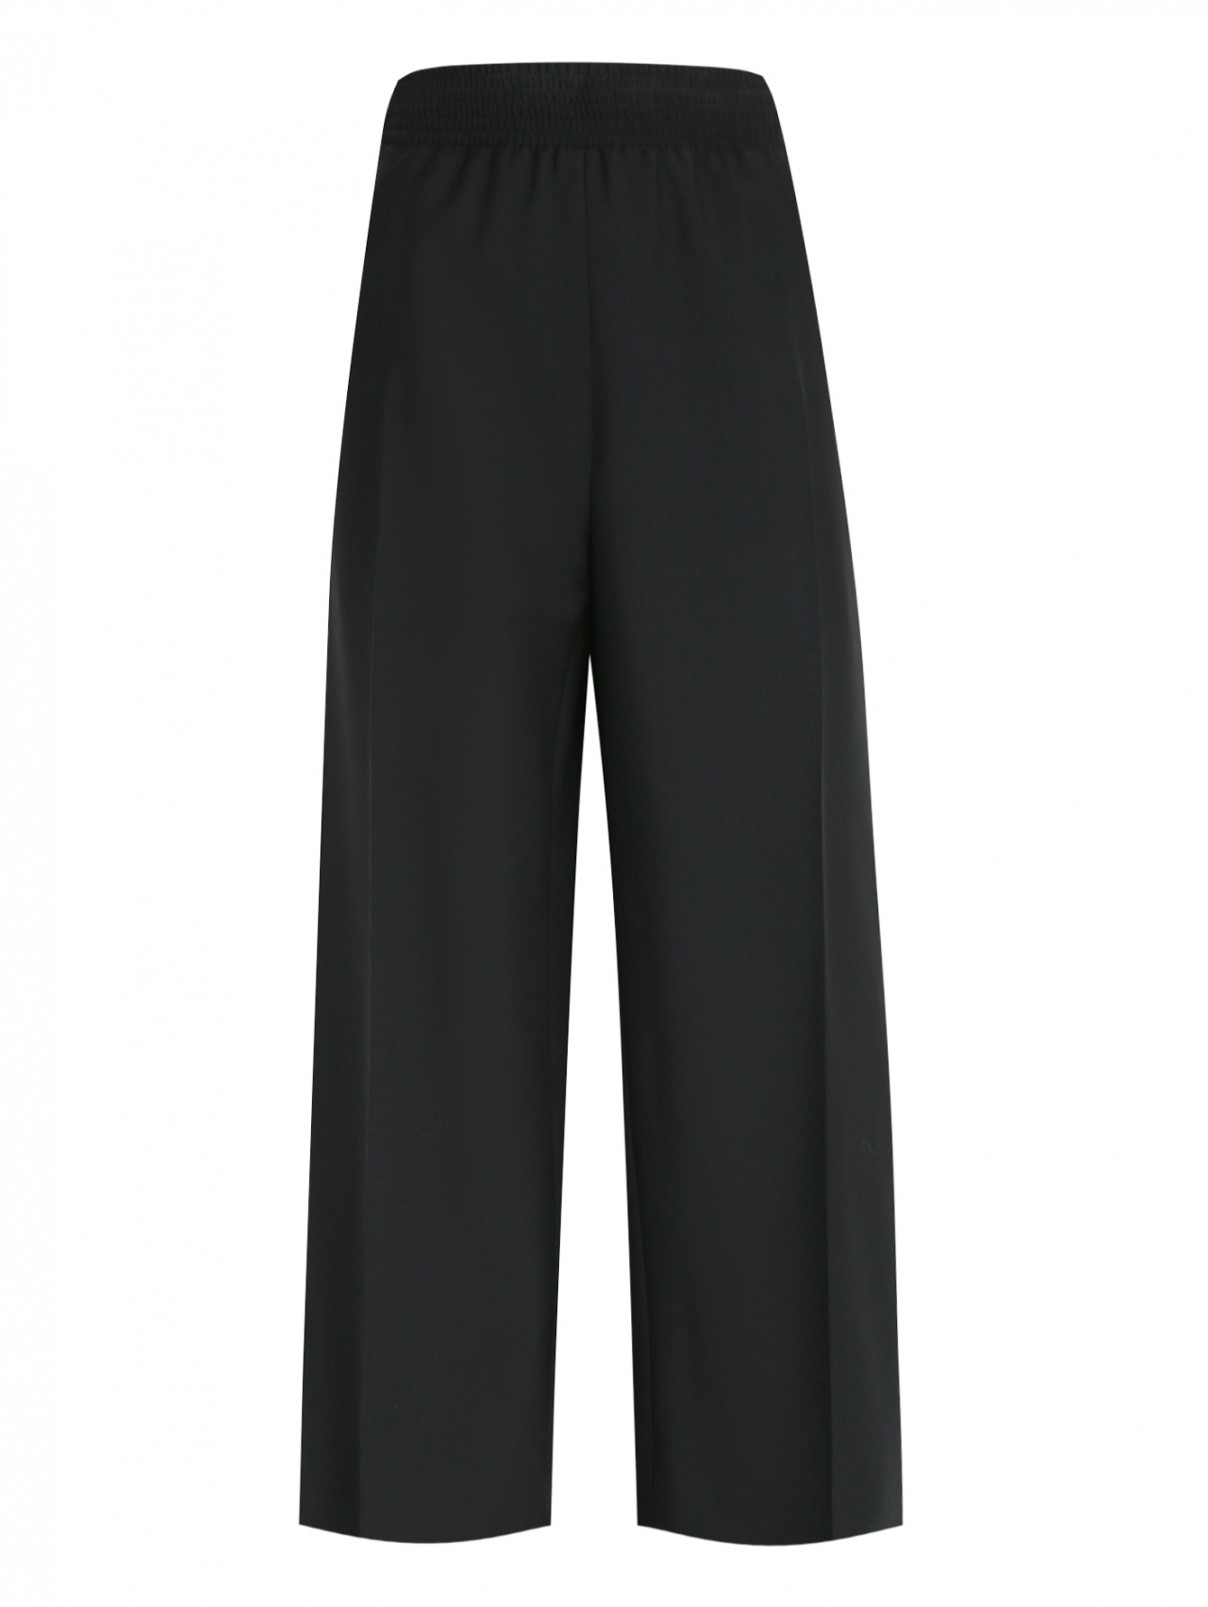 Широкие брюки из шерсти на резинке Jil Sander  –  Общий вид  – Цвет:  Черный